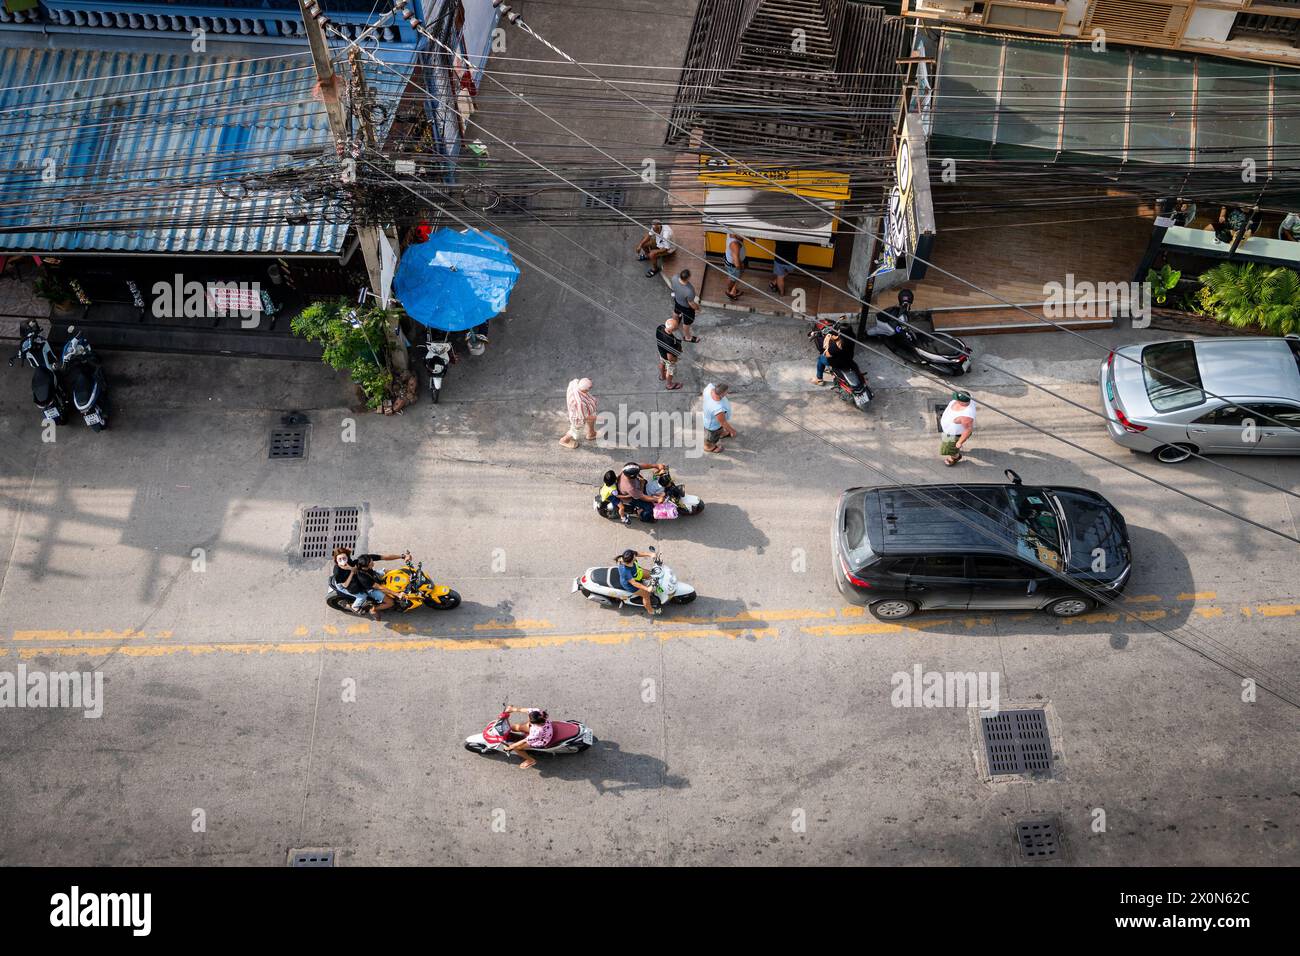 Ariel drehte mit Blick auf Soi Buakhao, eine Hauptstraße im Norden von Pattaya City, Thailand, die Taxis, Fahrräder, Autos und Baht-Busse zeigt. Stockfoto